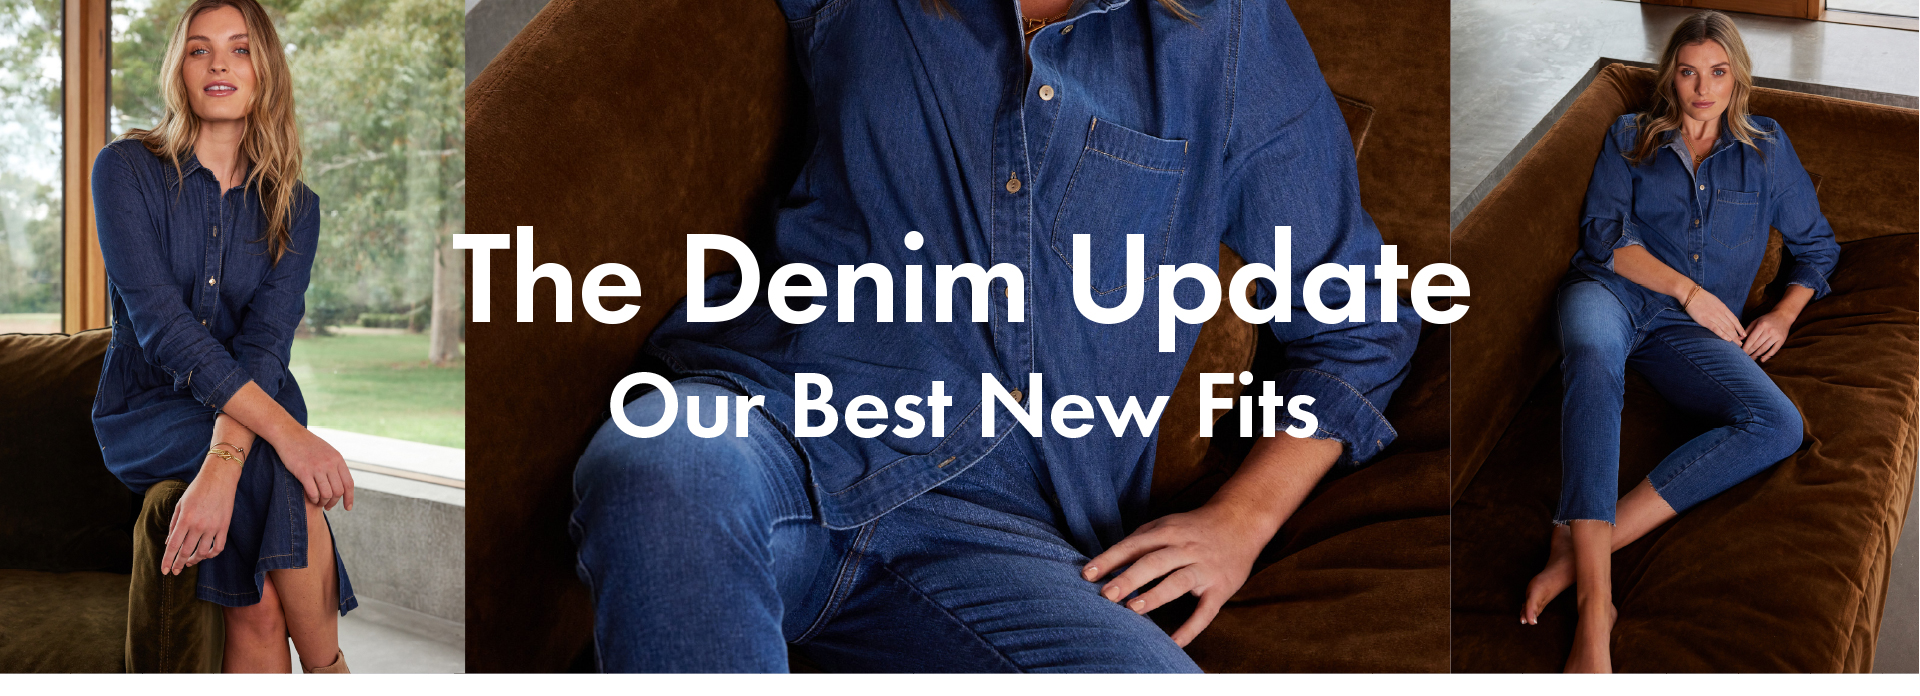 The Denim Update